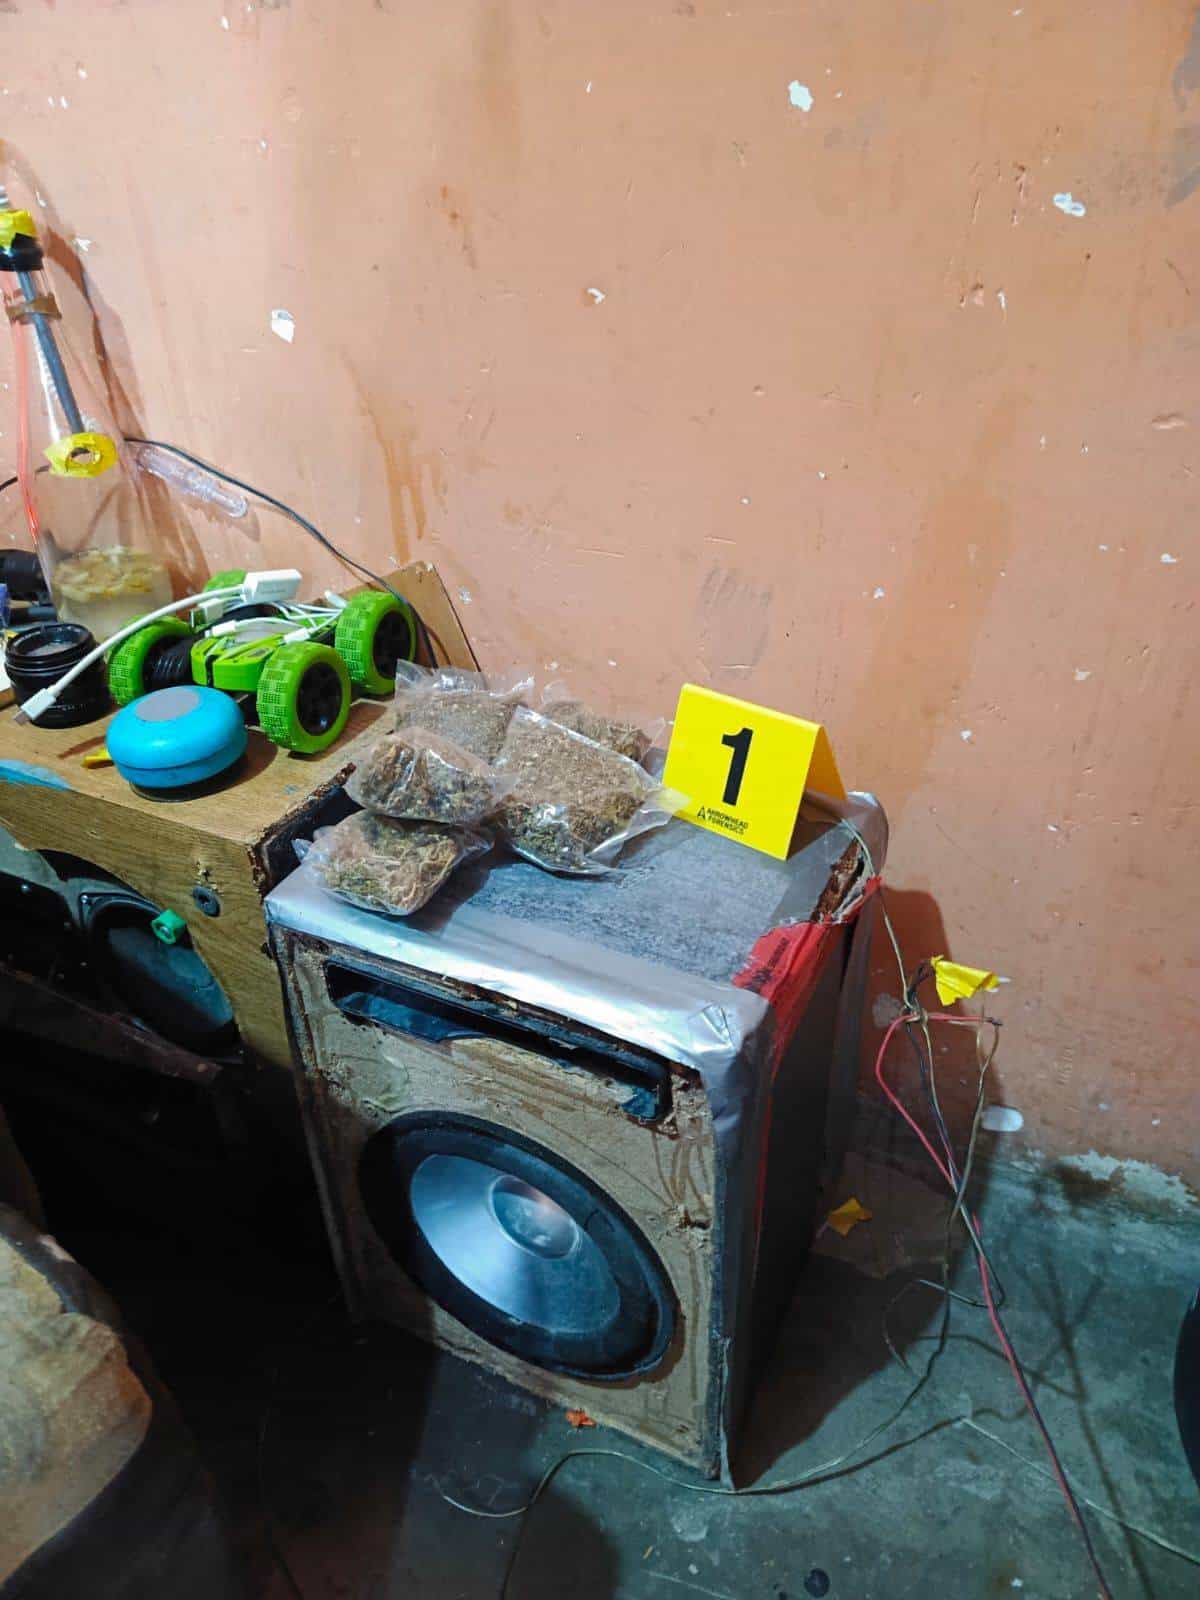 Elementos de la Agencia Estatal de Investigaciones catearon un domicilio en el municipio de El Carmen, donde aseguraron droga y una tabla para torturas.